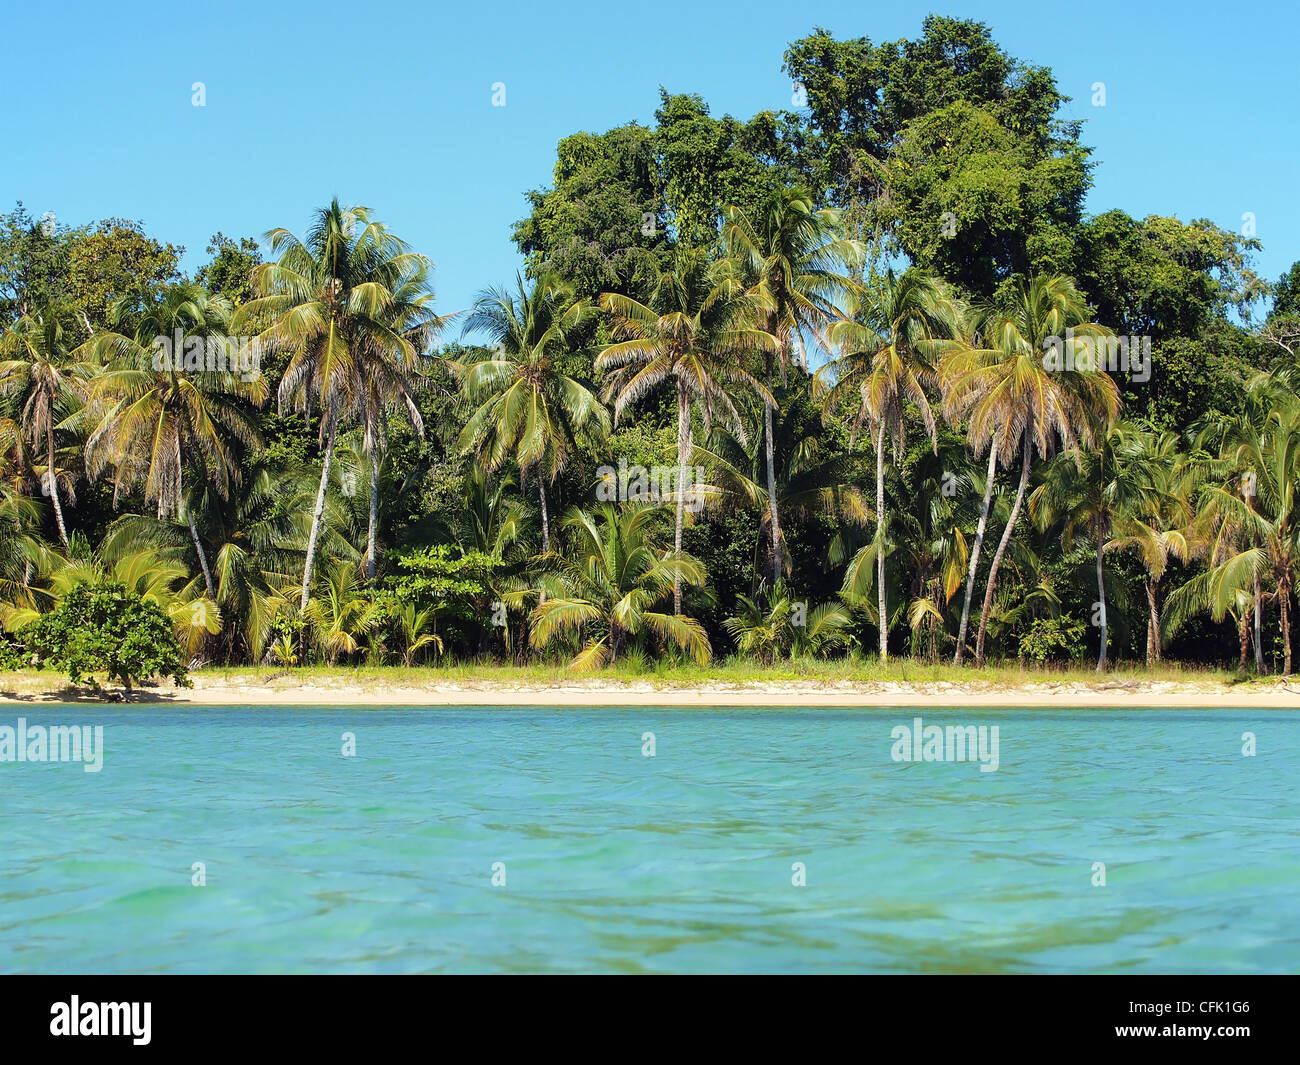 Mar de arena con vegetación tropical de la costa del Caribe Foto de stock